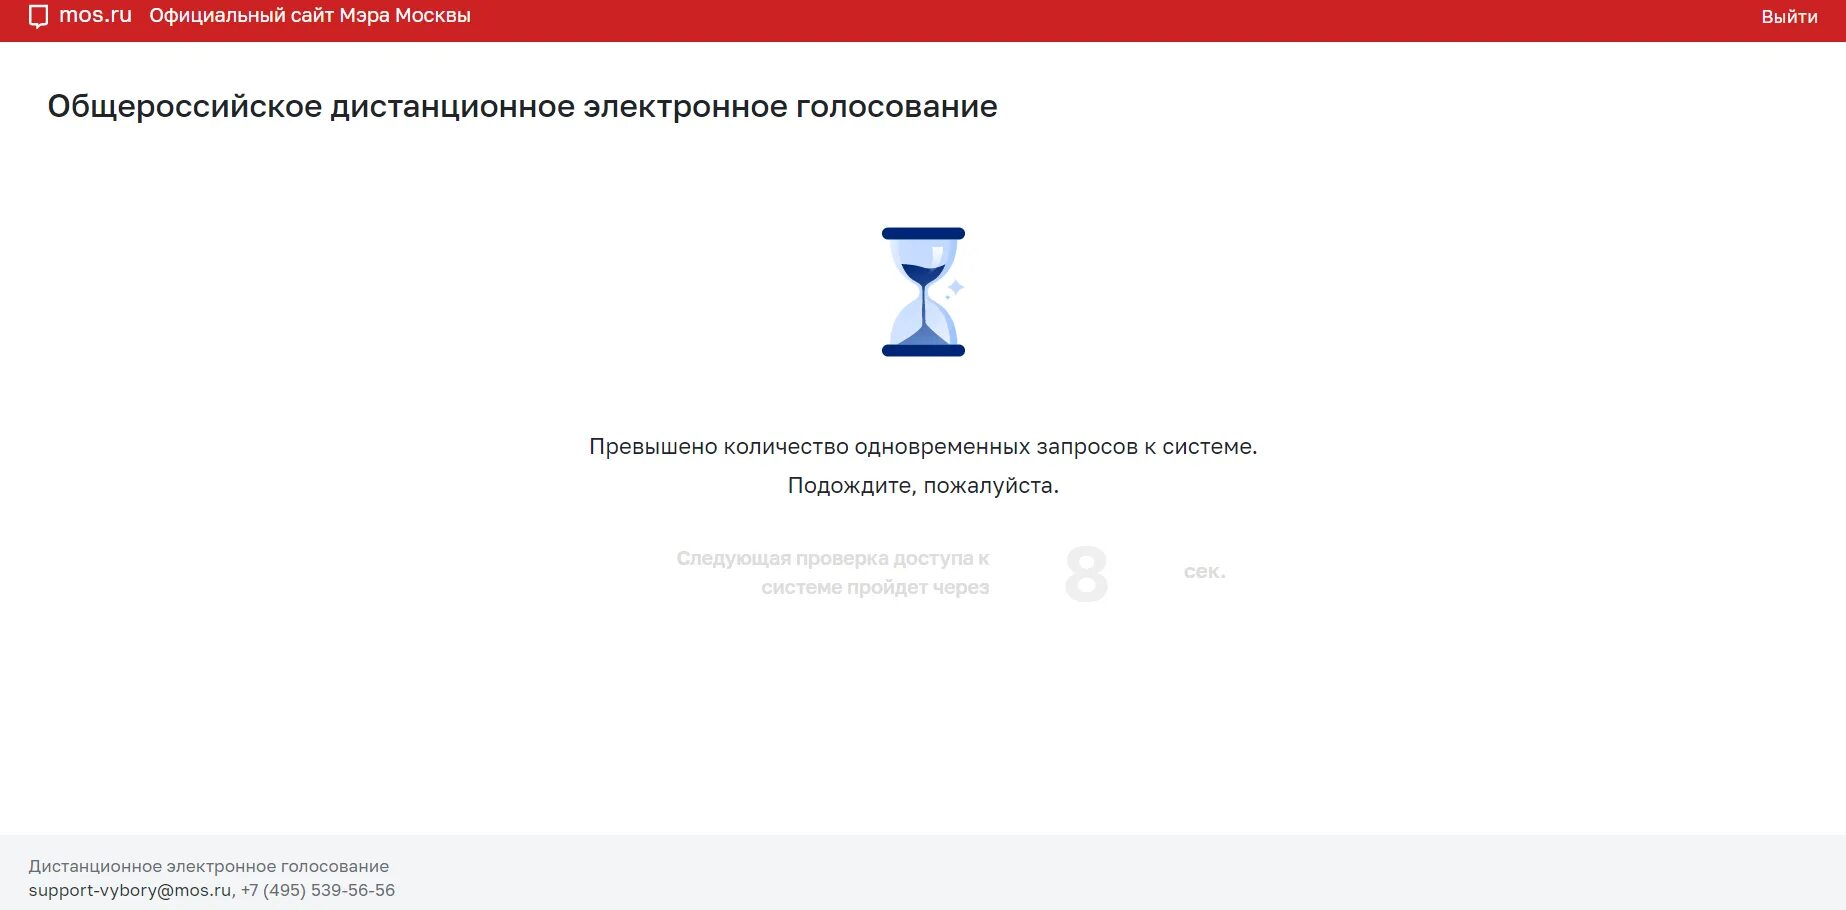 Проблемы дистанционного электронного голосования. Электронное голосование Мос ру. Mos.ru приложение. Вы уже проголосовали Мос ру.